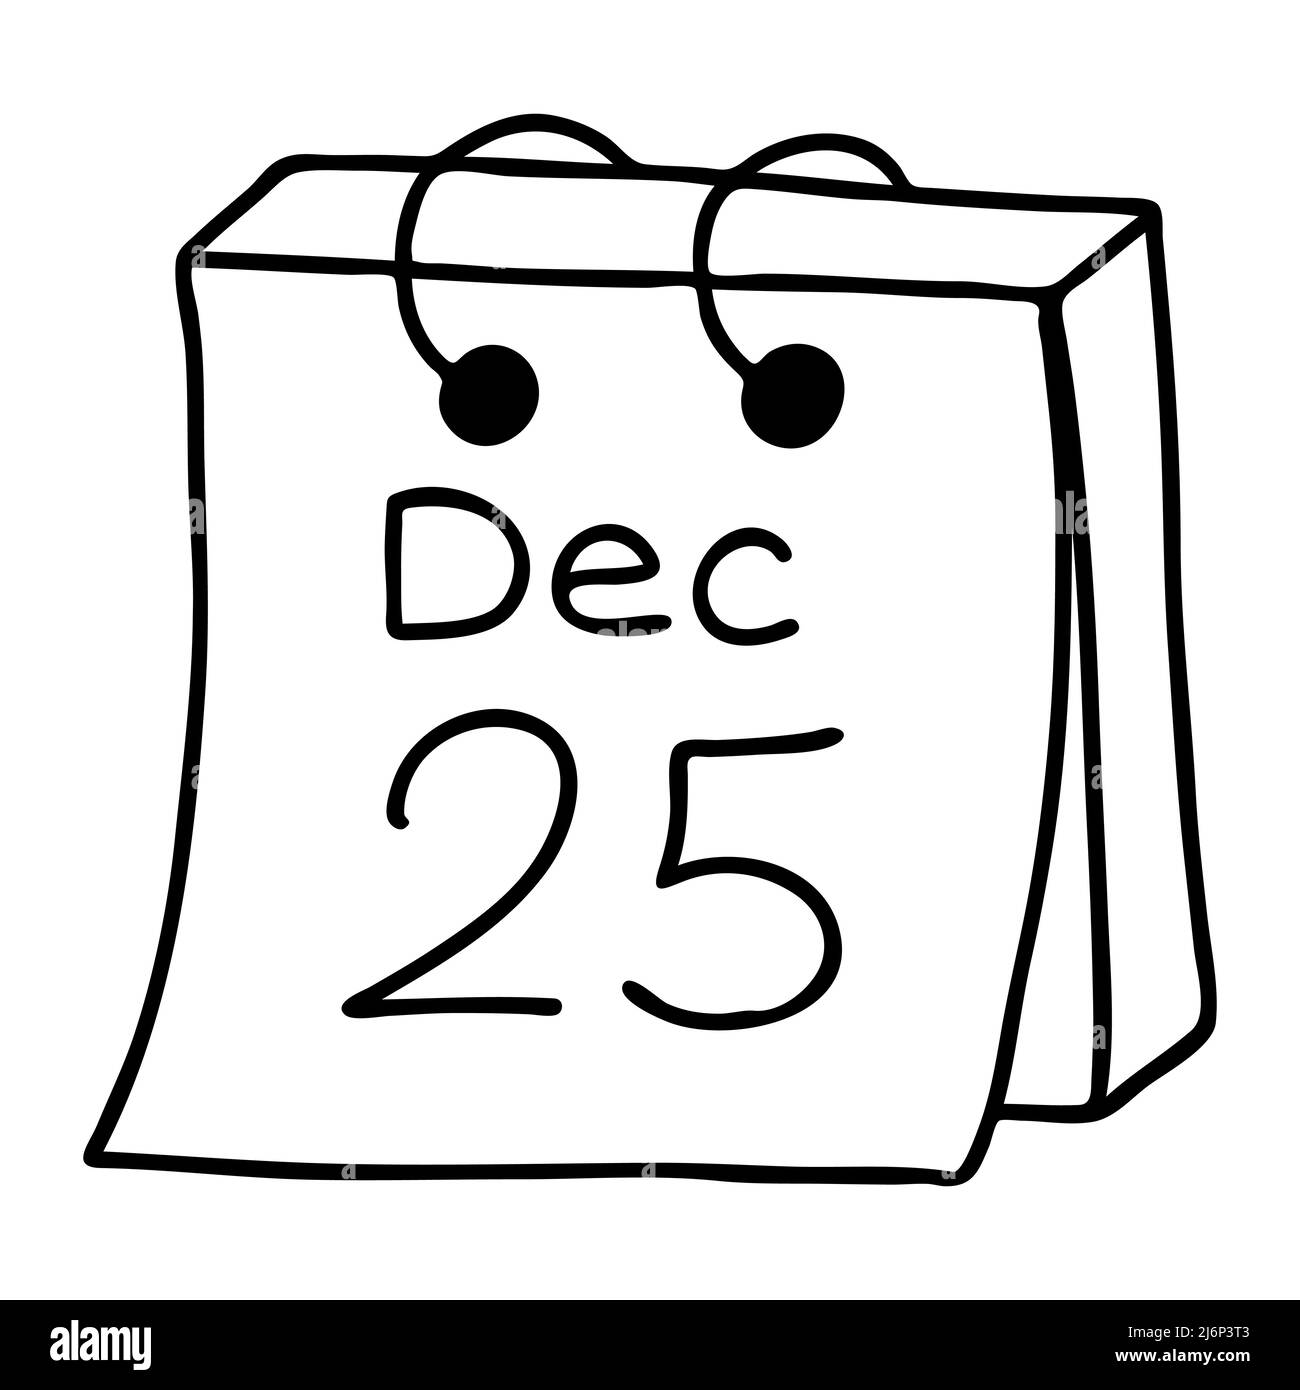 Feuille de calendrier de décembre 25 en style Doodle. L'esquisse est dessinée à la main et isolée sur un arrière-plan blanc. Élément de la nouvelle année et du design de Noël Illustration de Vecteur